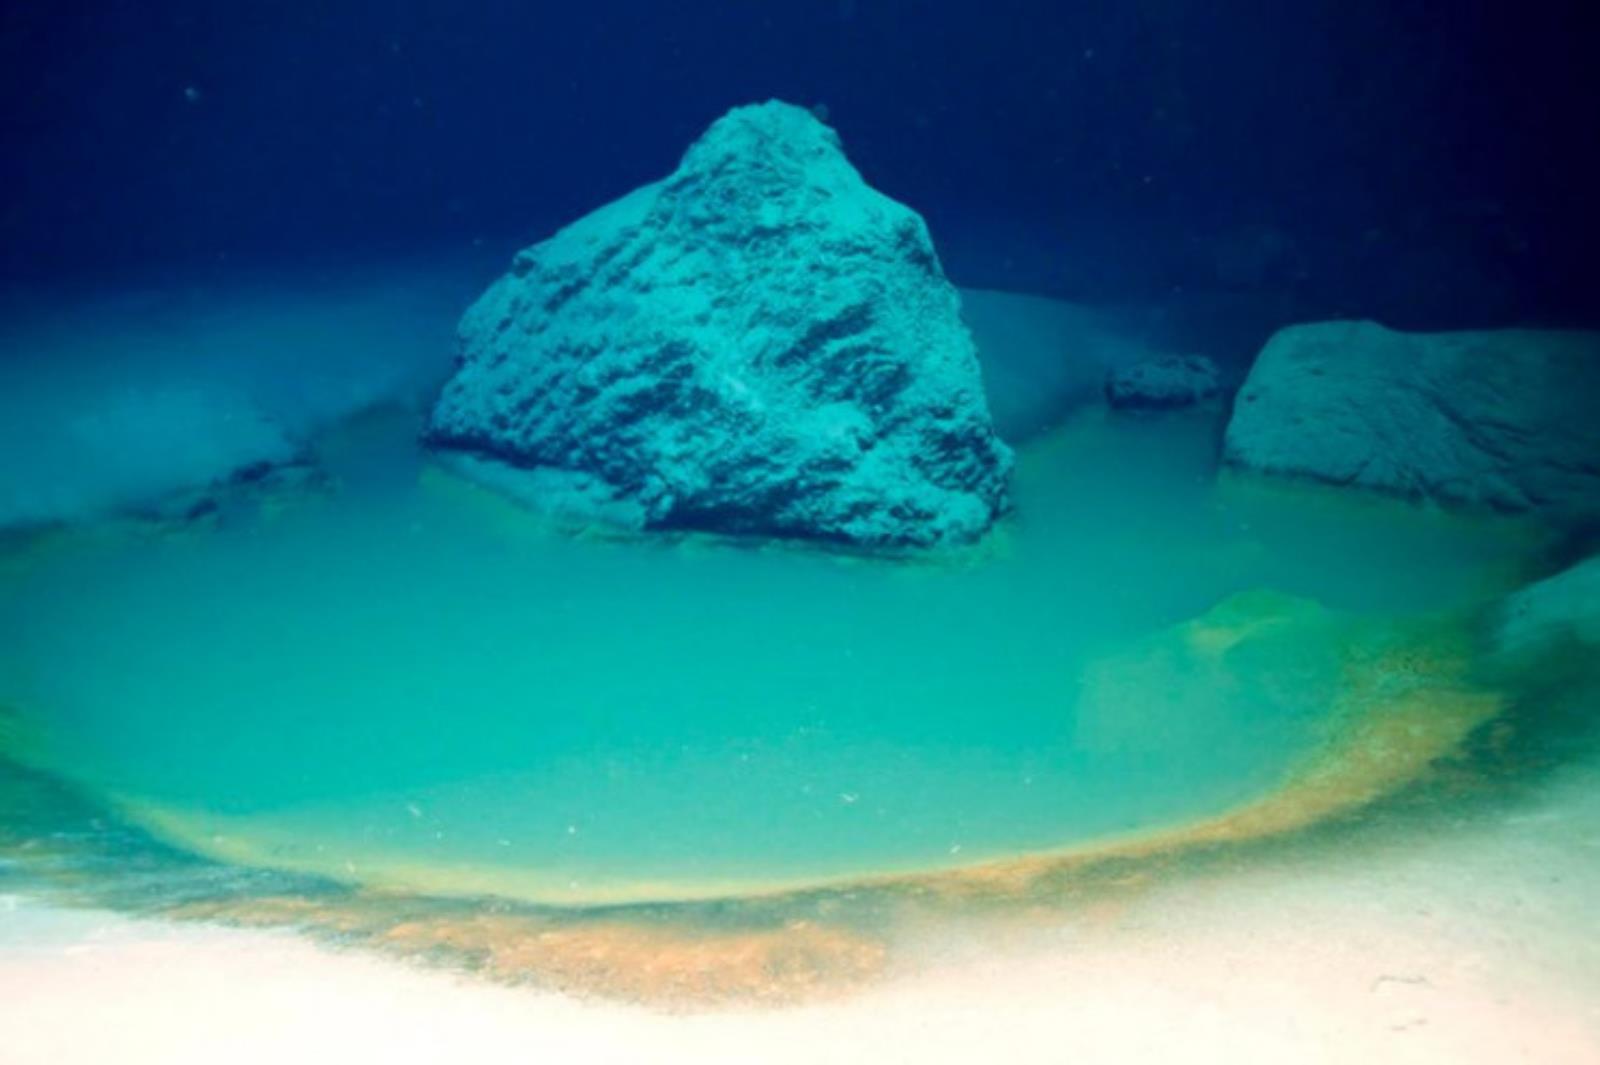 Niesamowite odkrycie na dnie Morza Czerwonego, proces zwalczania raka i pojęcie tajemnic życia pozaziemskiego